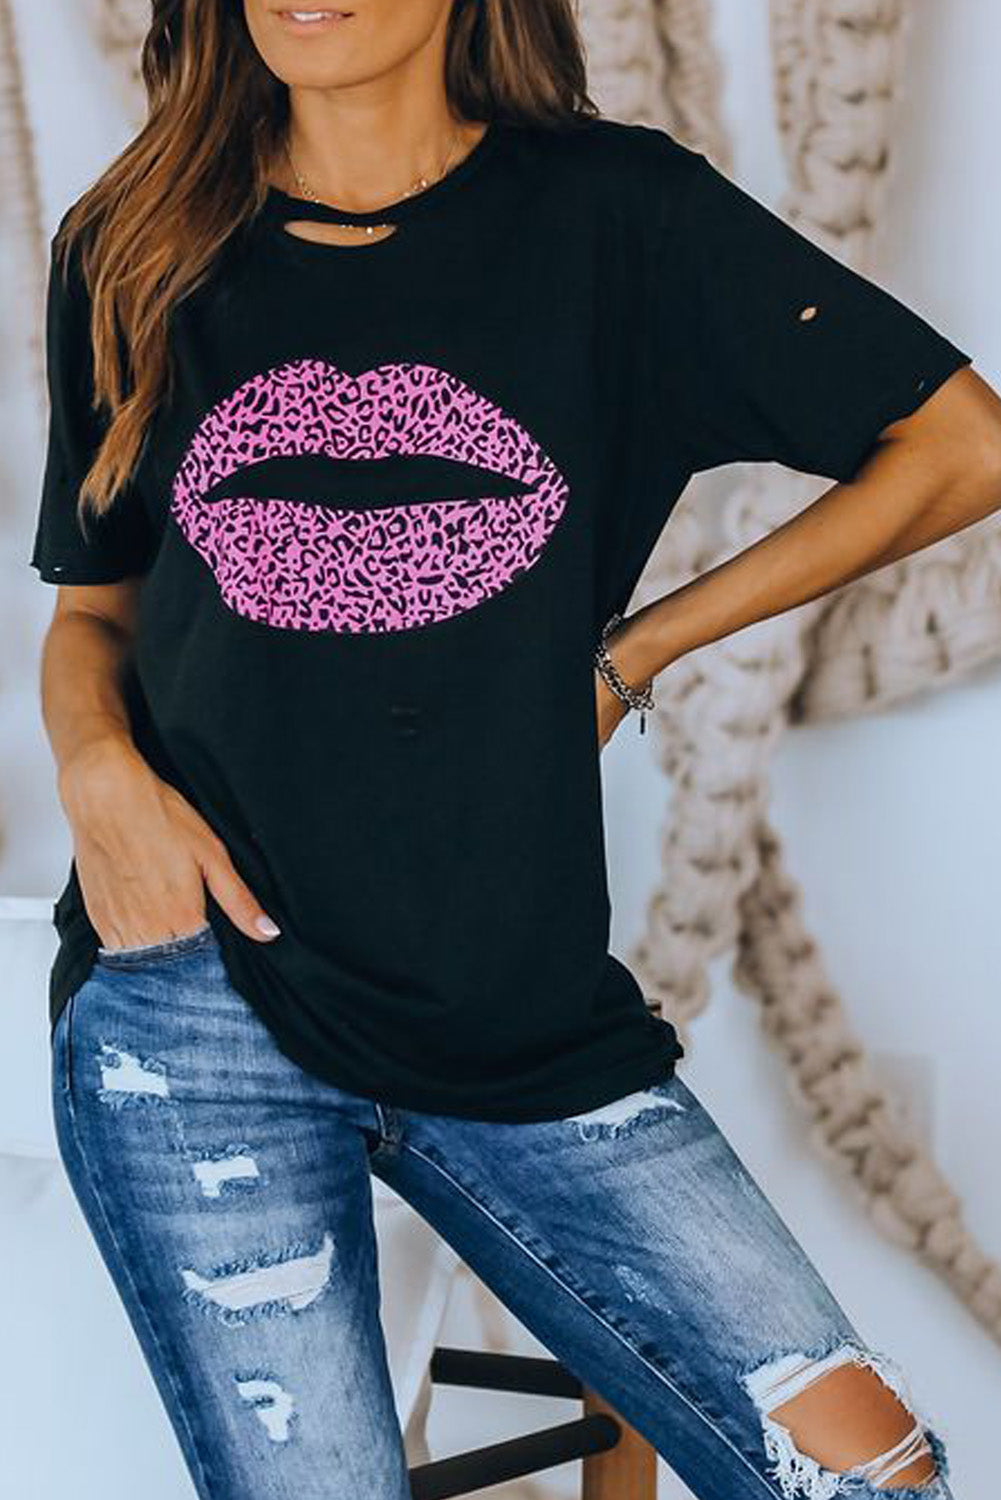 Trendsi Cupid Beauty Supplies Woman's T-Shirts Leopard Lip Distressed T-Shirt